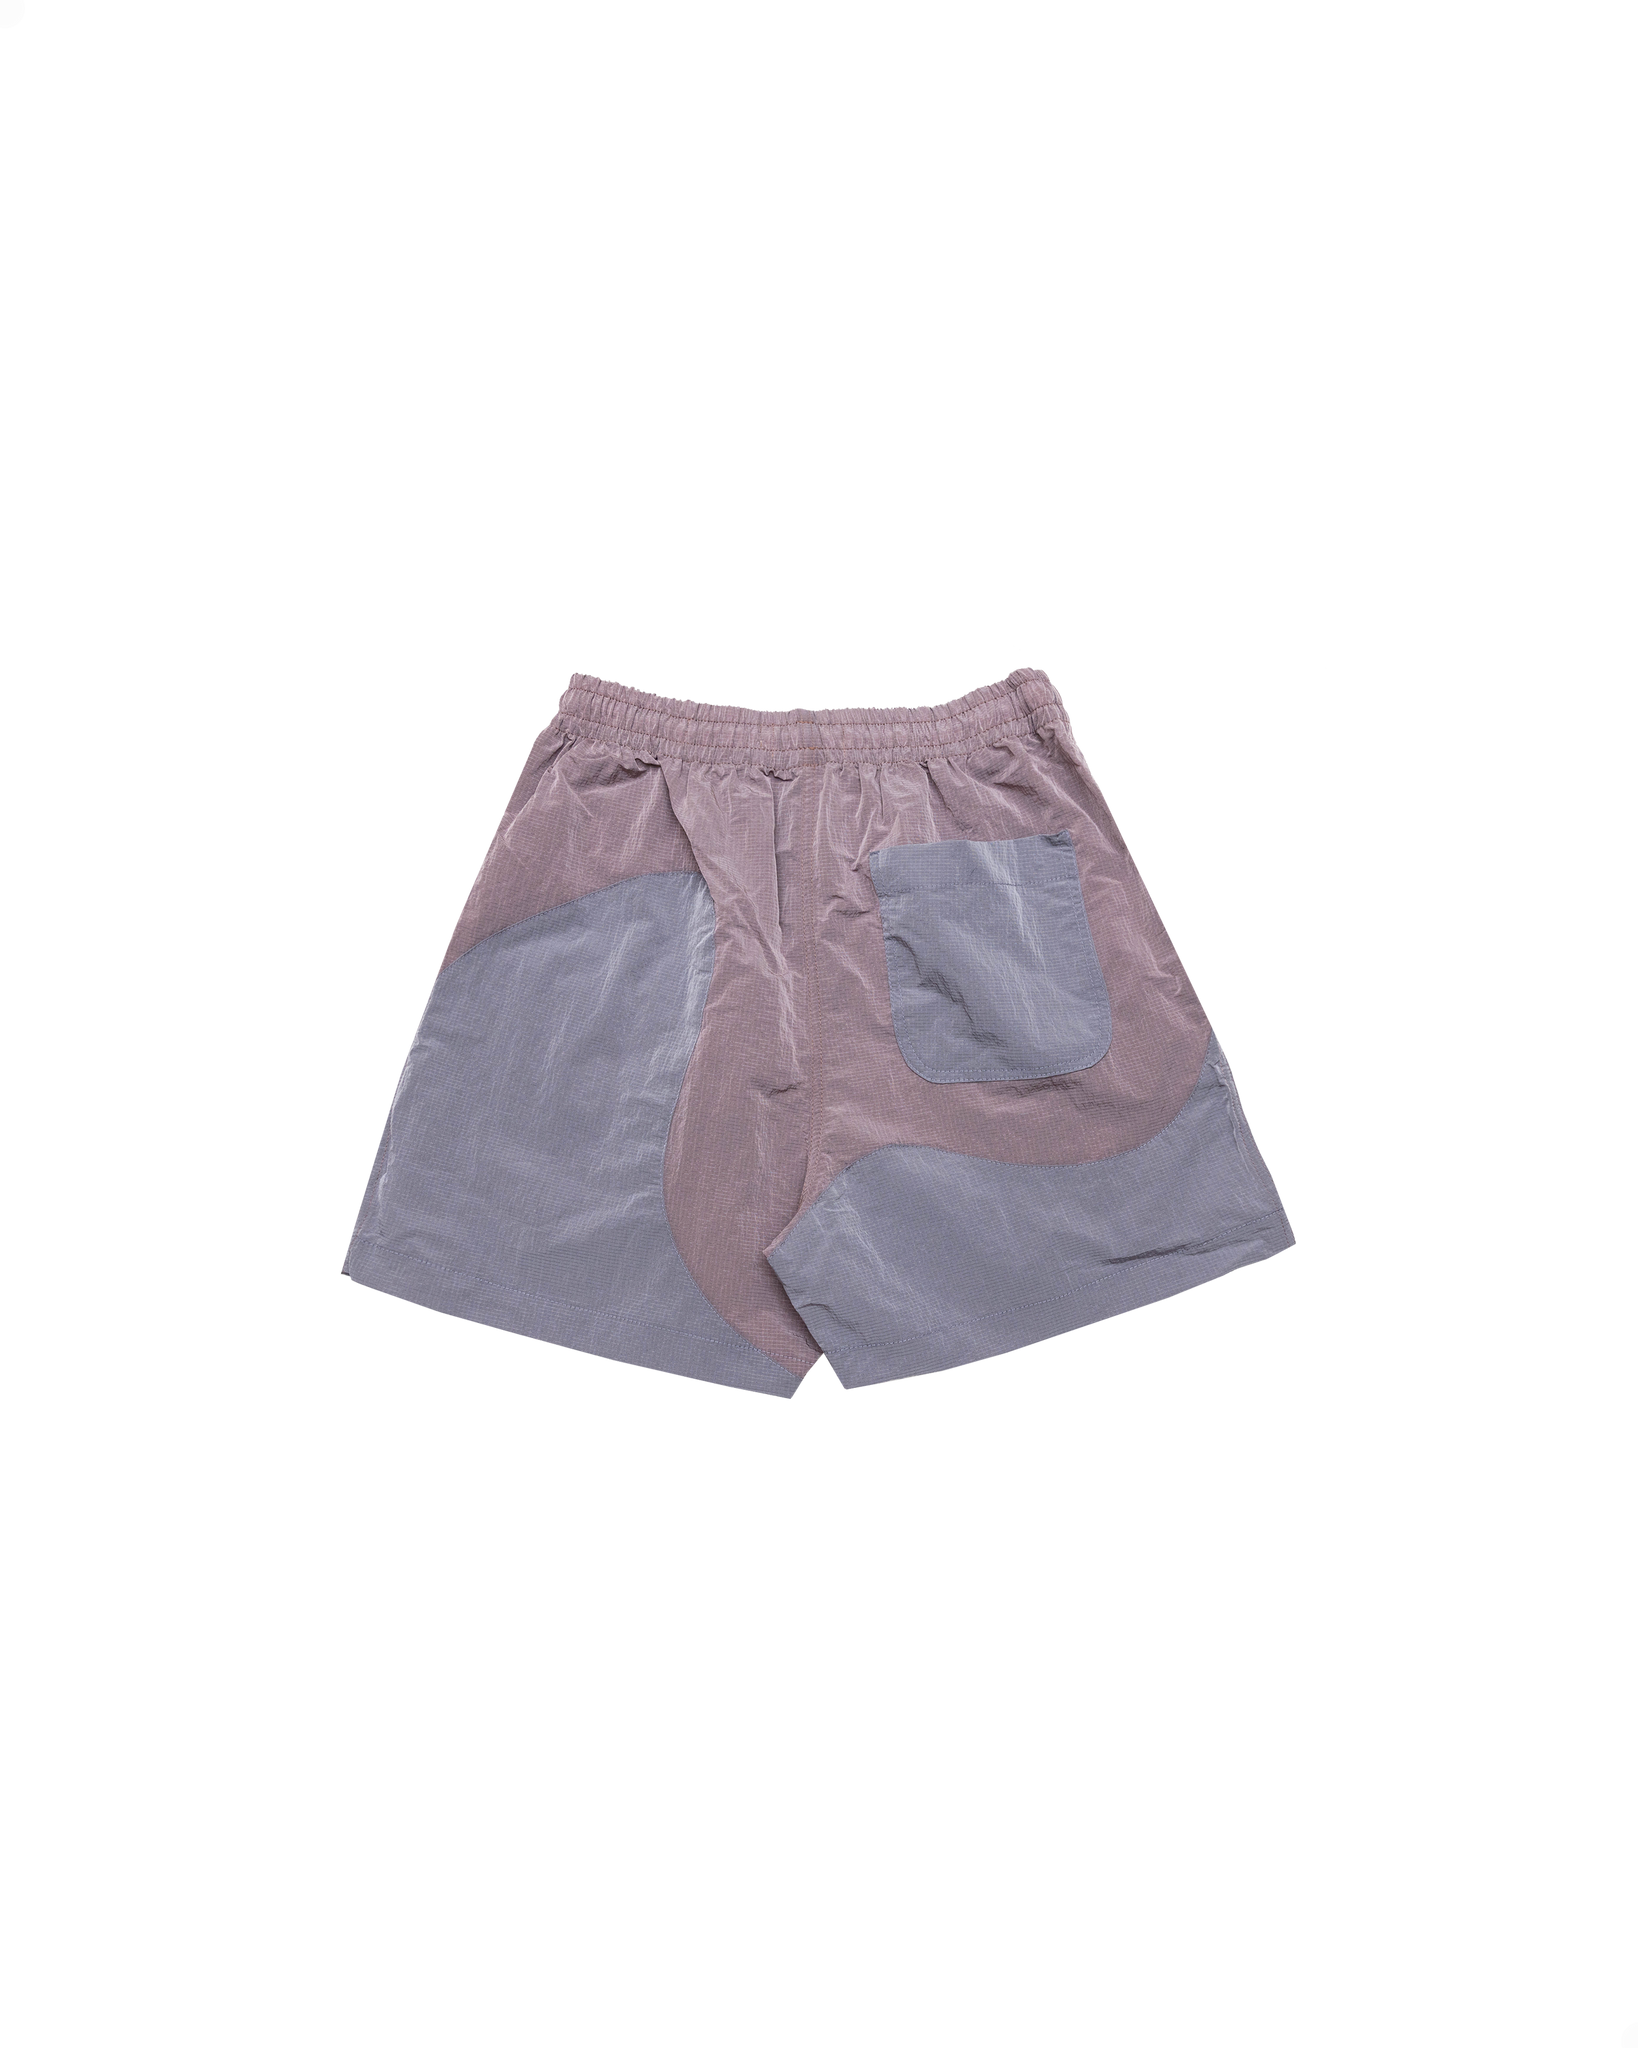 Onda Shorts: Grape/Mauve